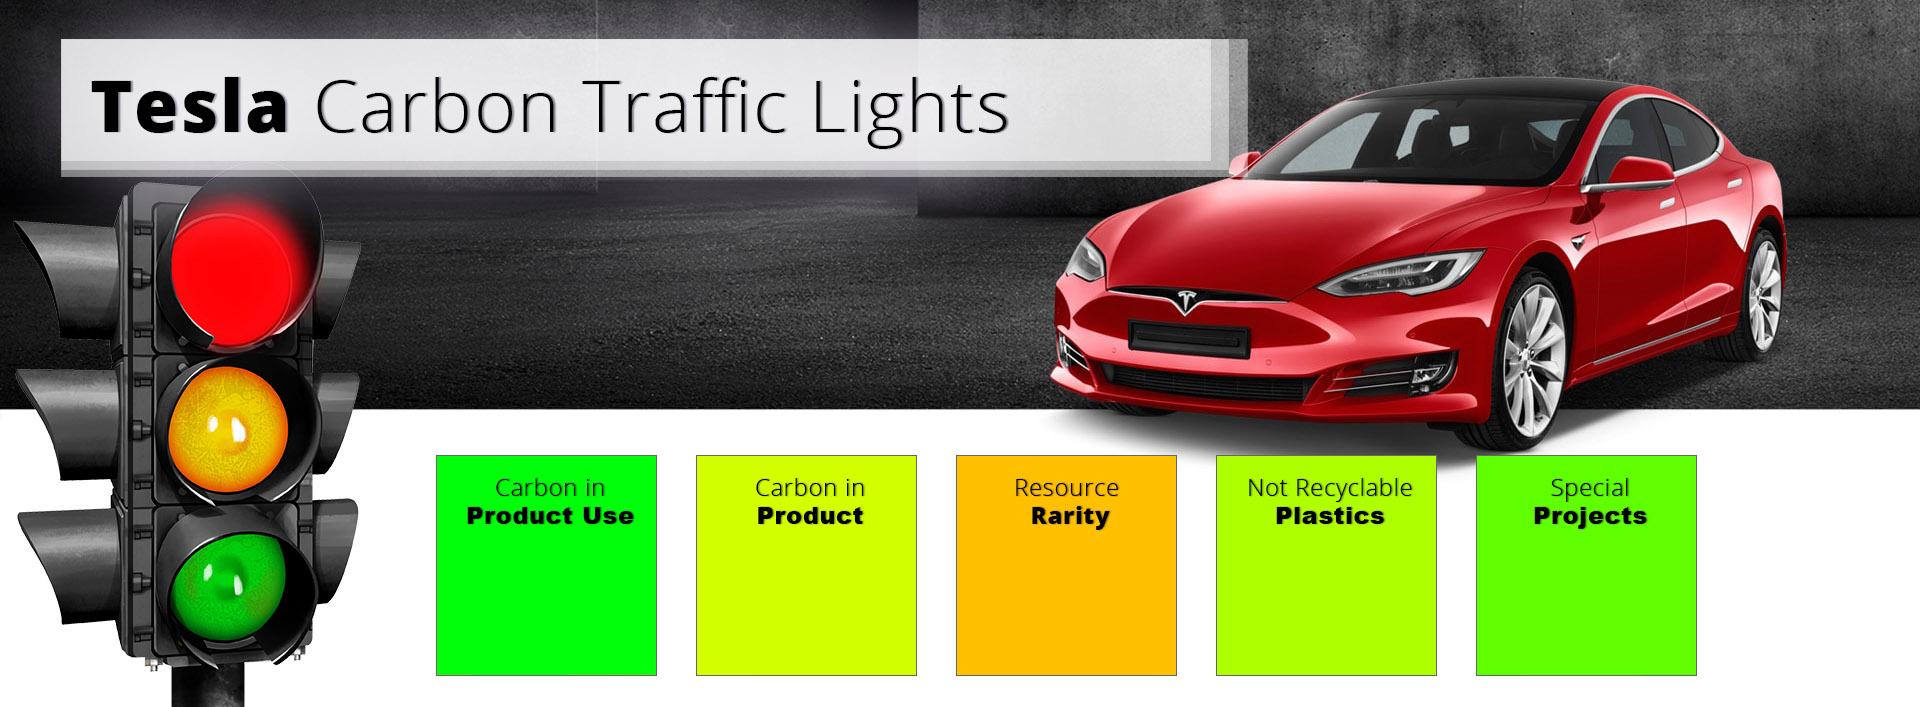 Tesla__Carbon-Traffic-Lights